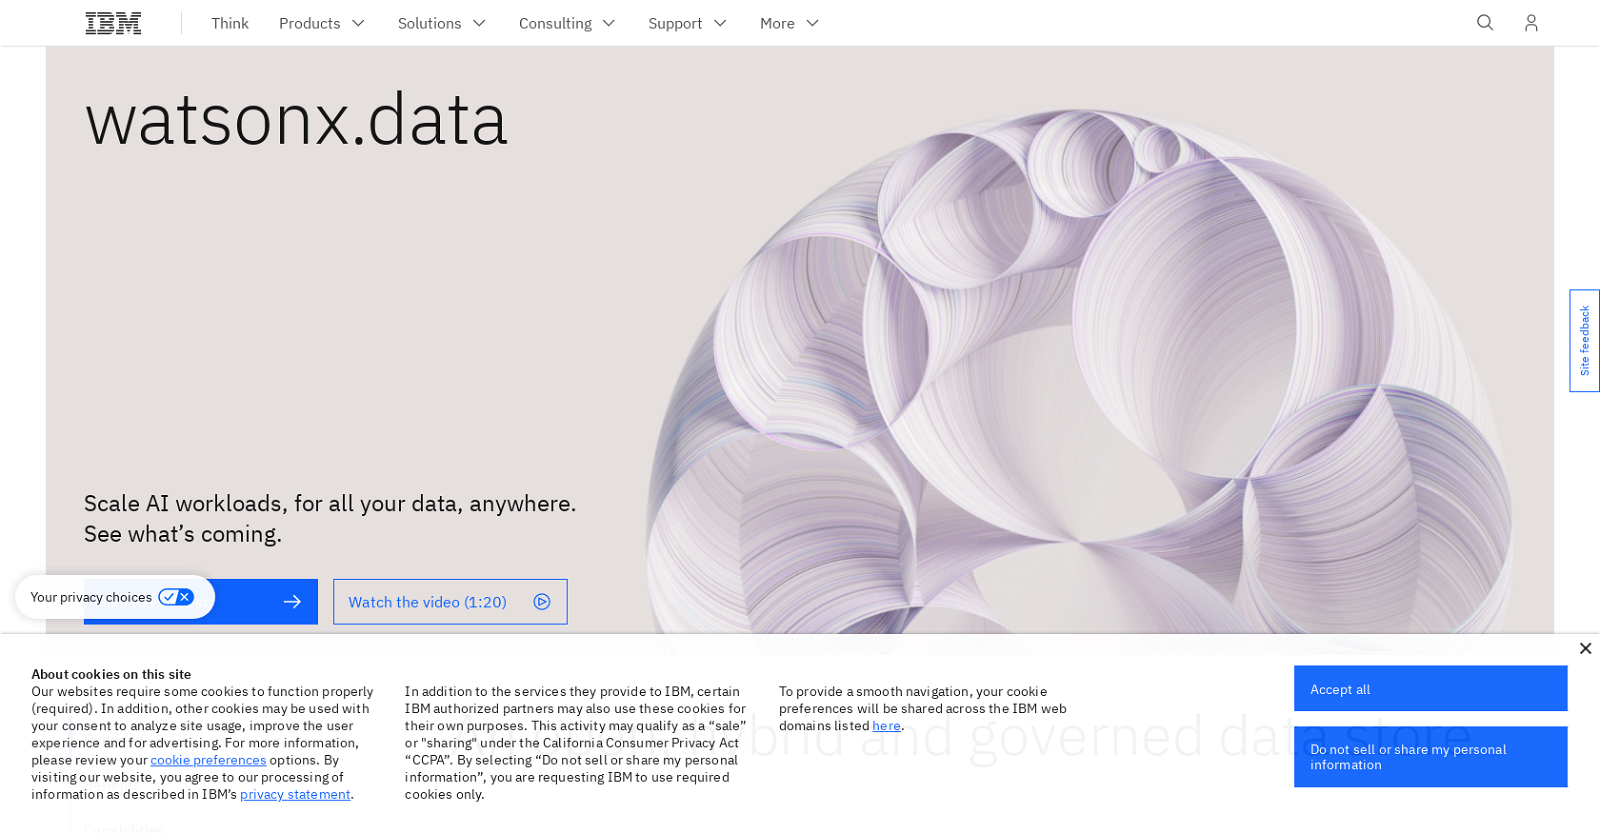 WatsonX.data by IBM website